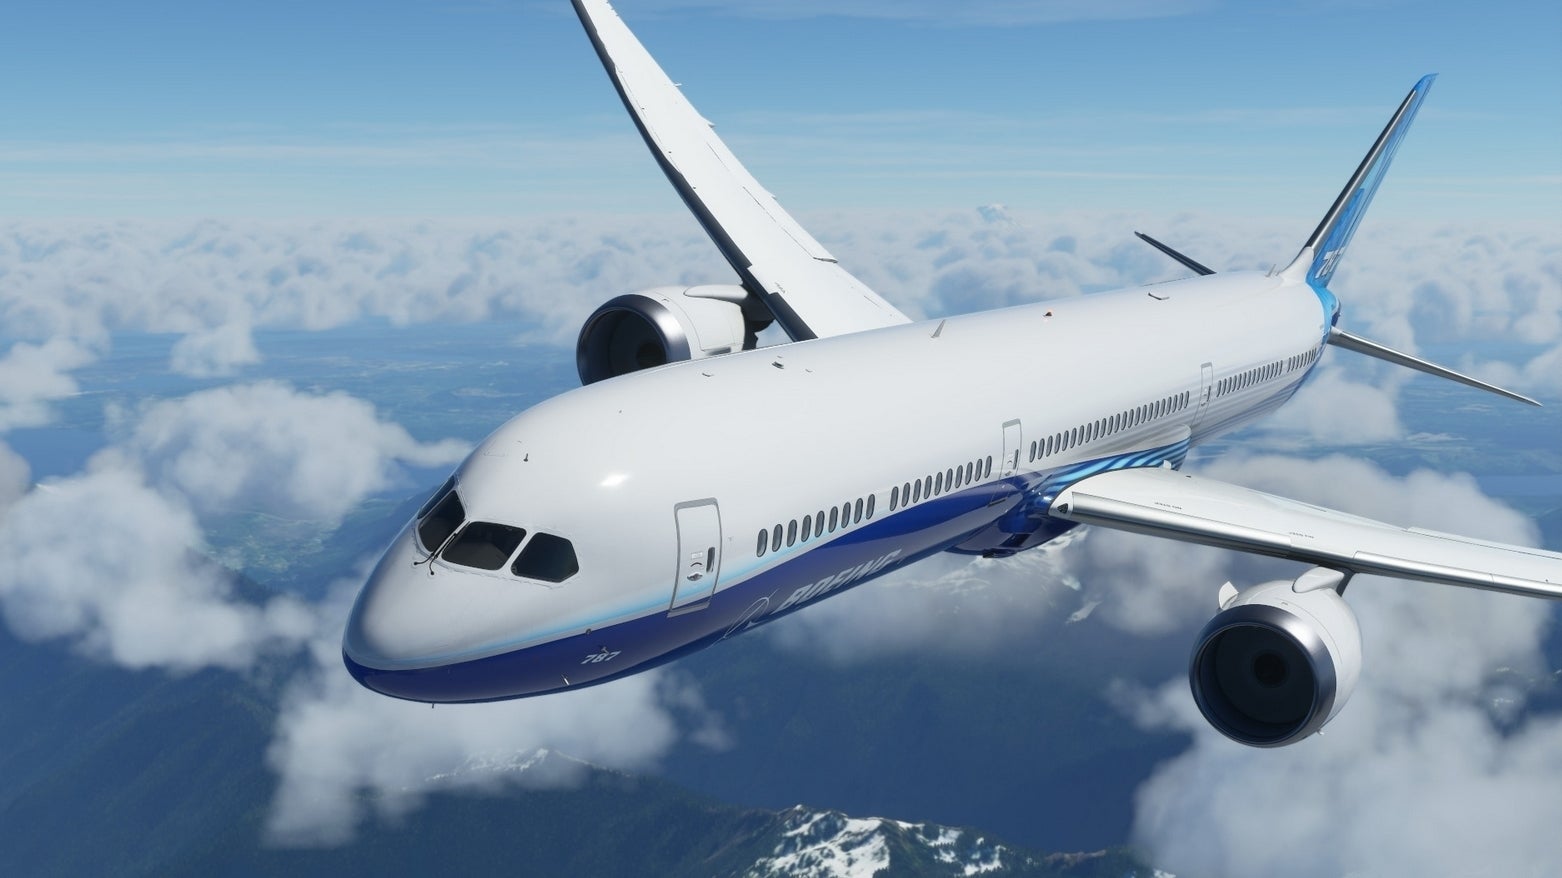 Bilder zu Flight Simulator: Neues Add-On macht Lust auf Urlaub in Florenz